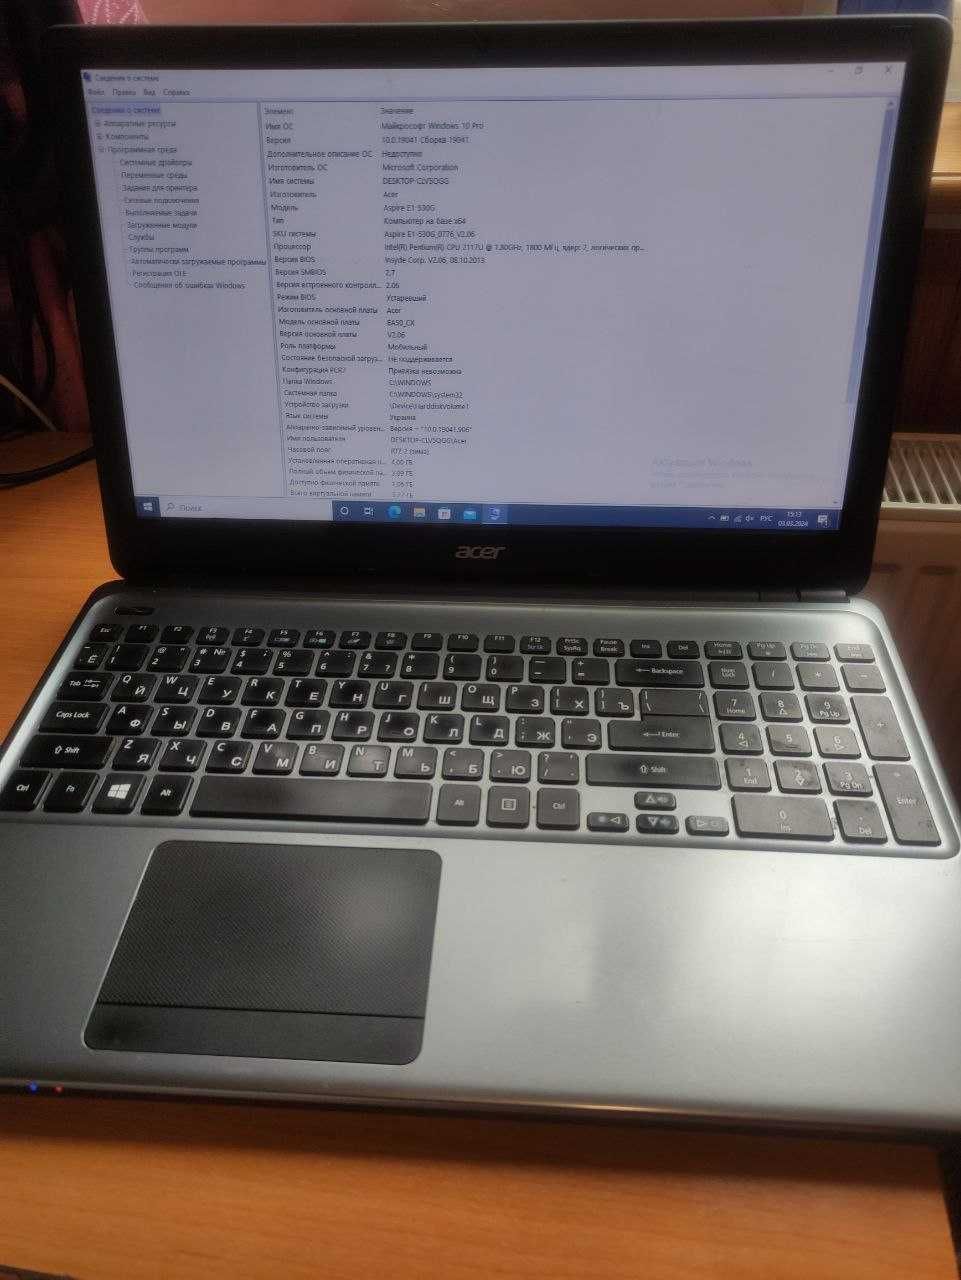 Ноутбук Acer Aspire E1-530G